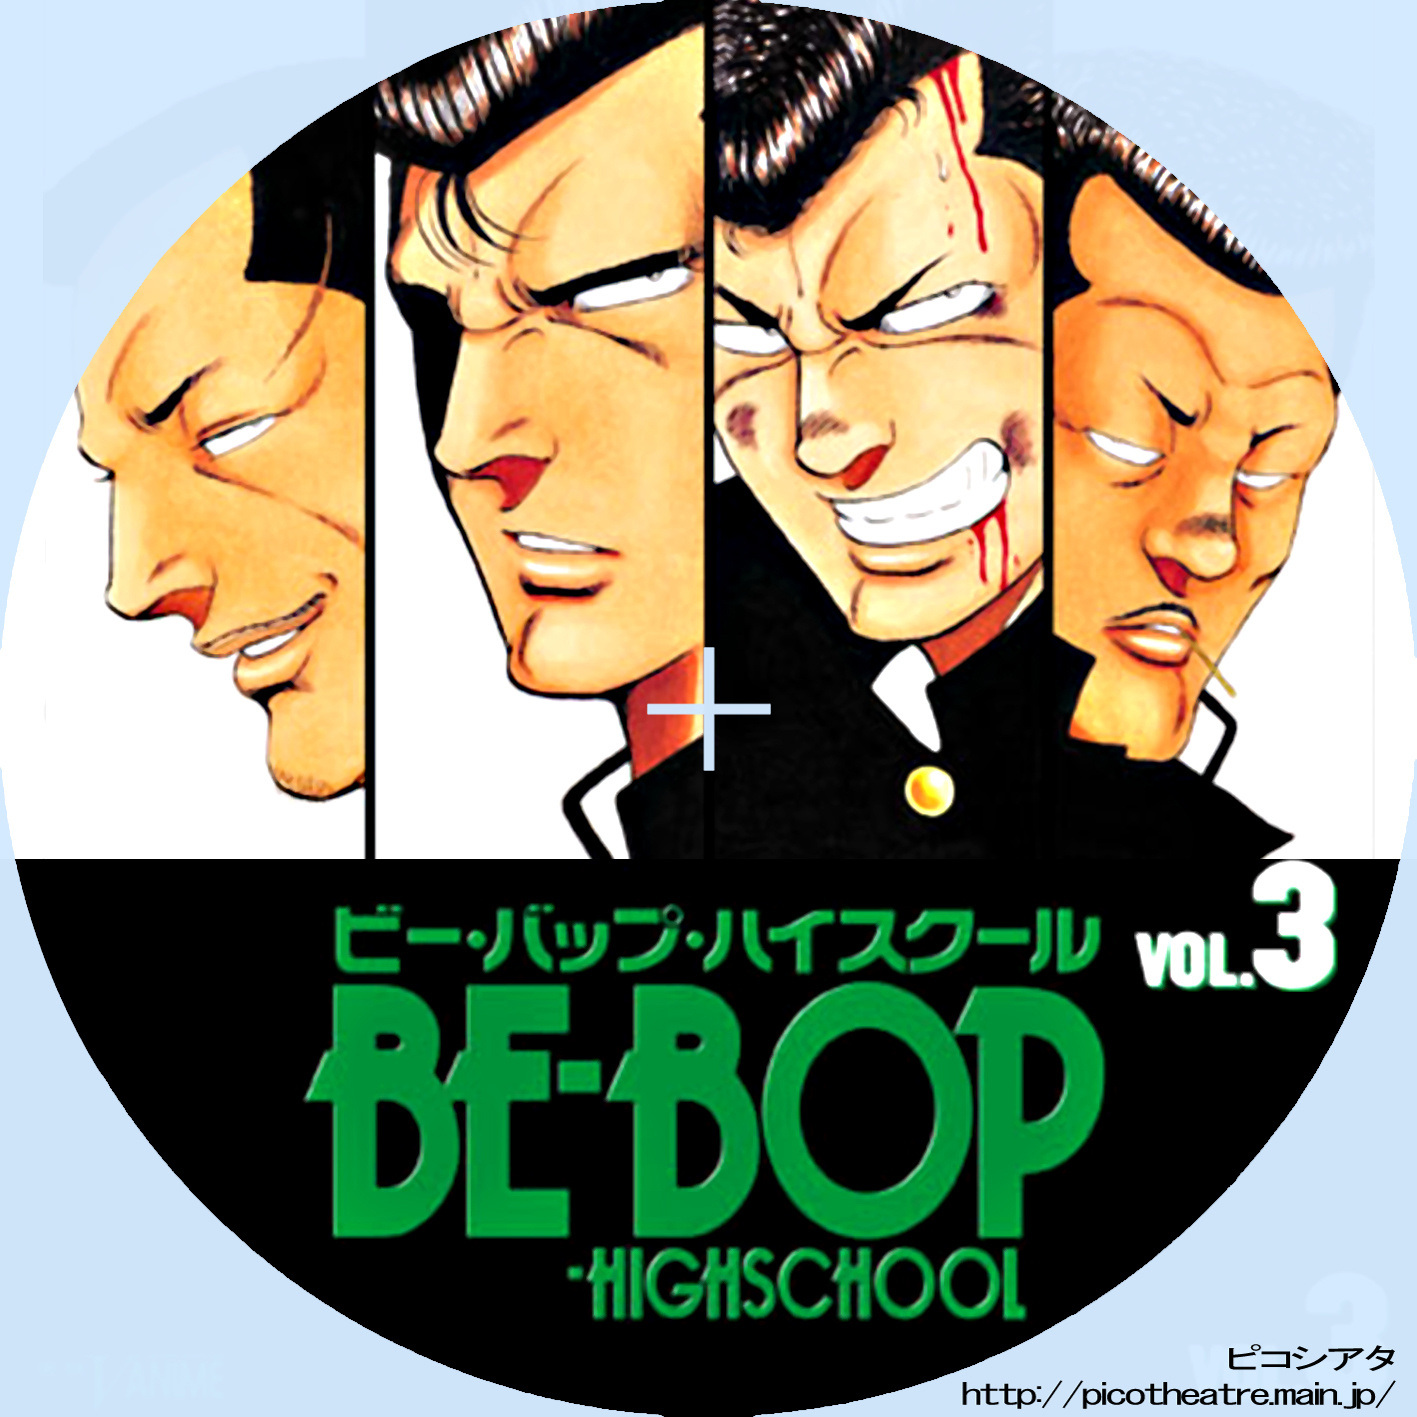 BE-BOP-HIGHSCHOOL ビー・バップ・ハイスクール03 | DVDラベルギャラリー